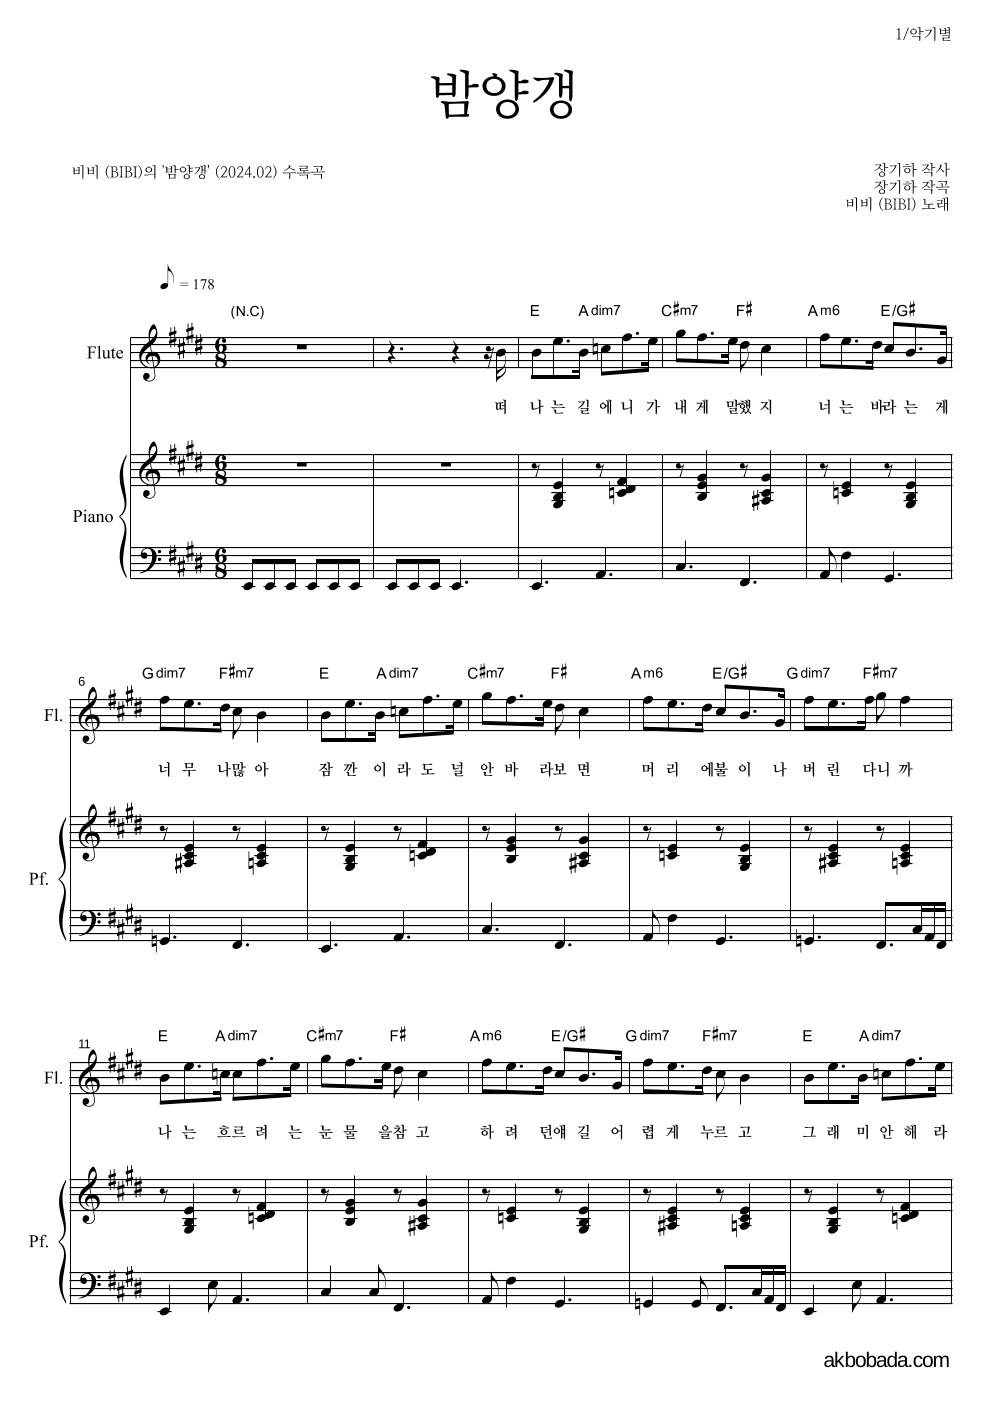 비비(BIBI) - 밤양갱 플룻&피아노 악보 